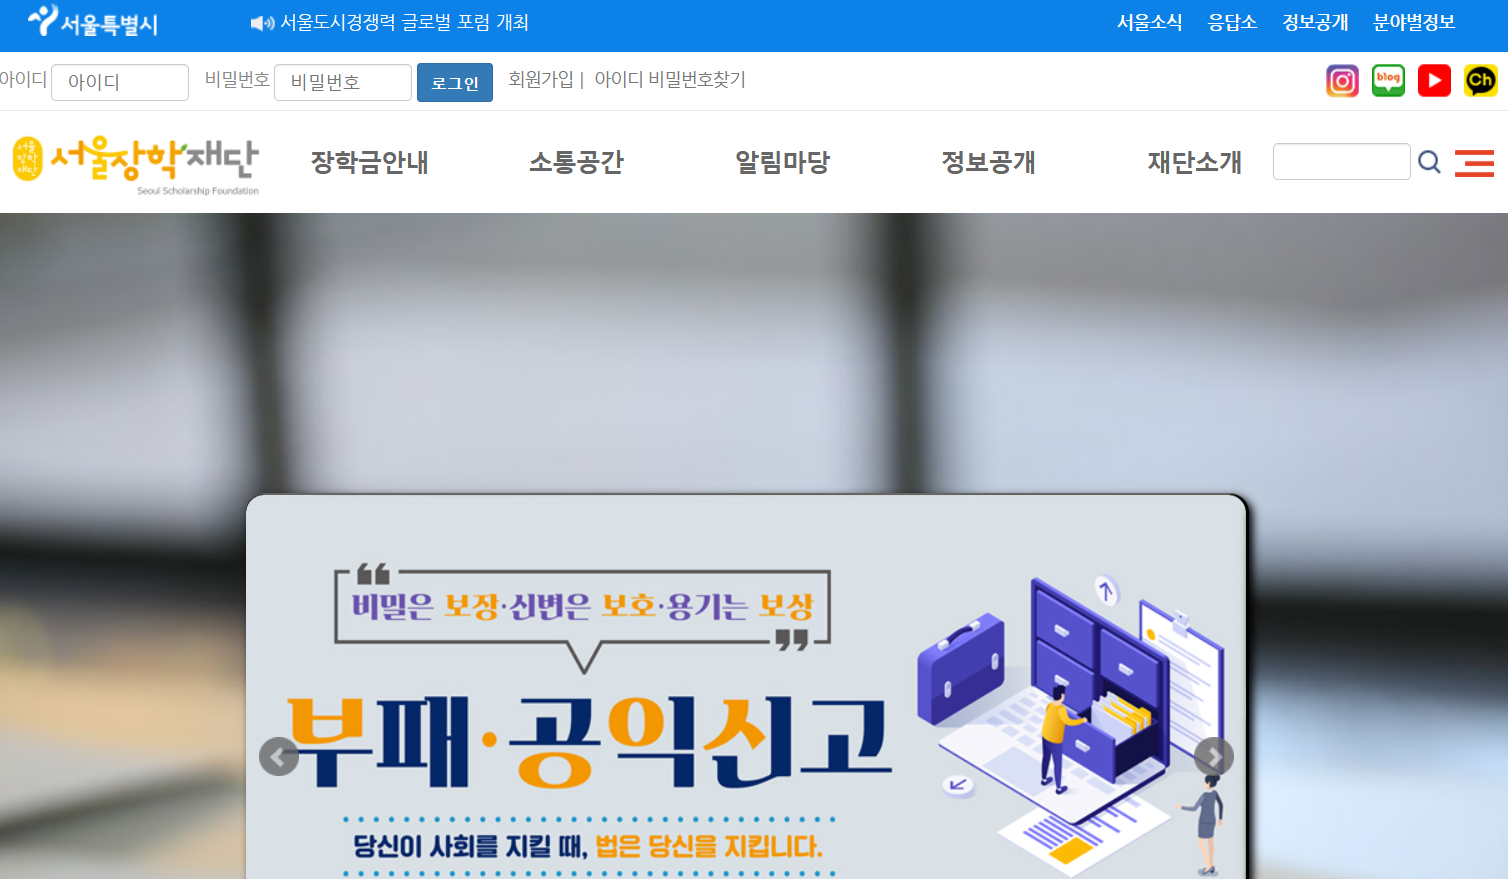 서울장학재단 홈페이지